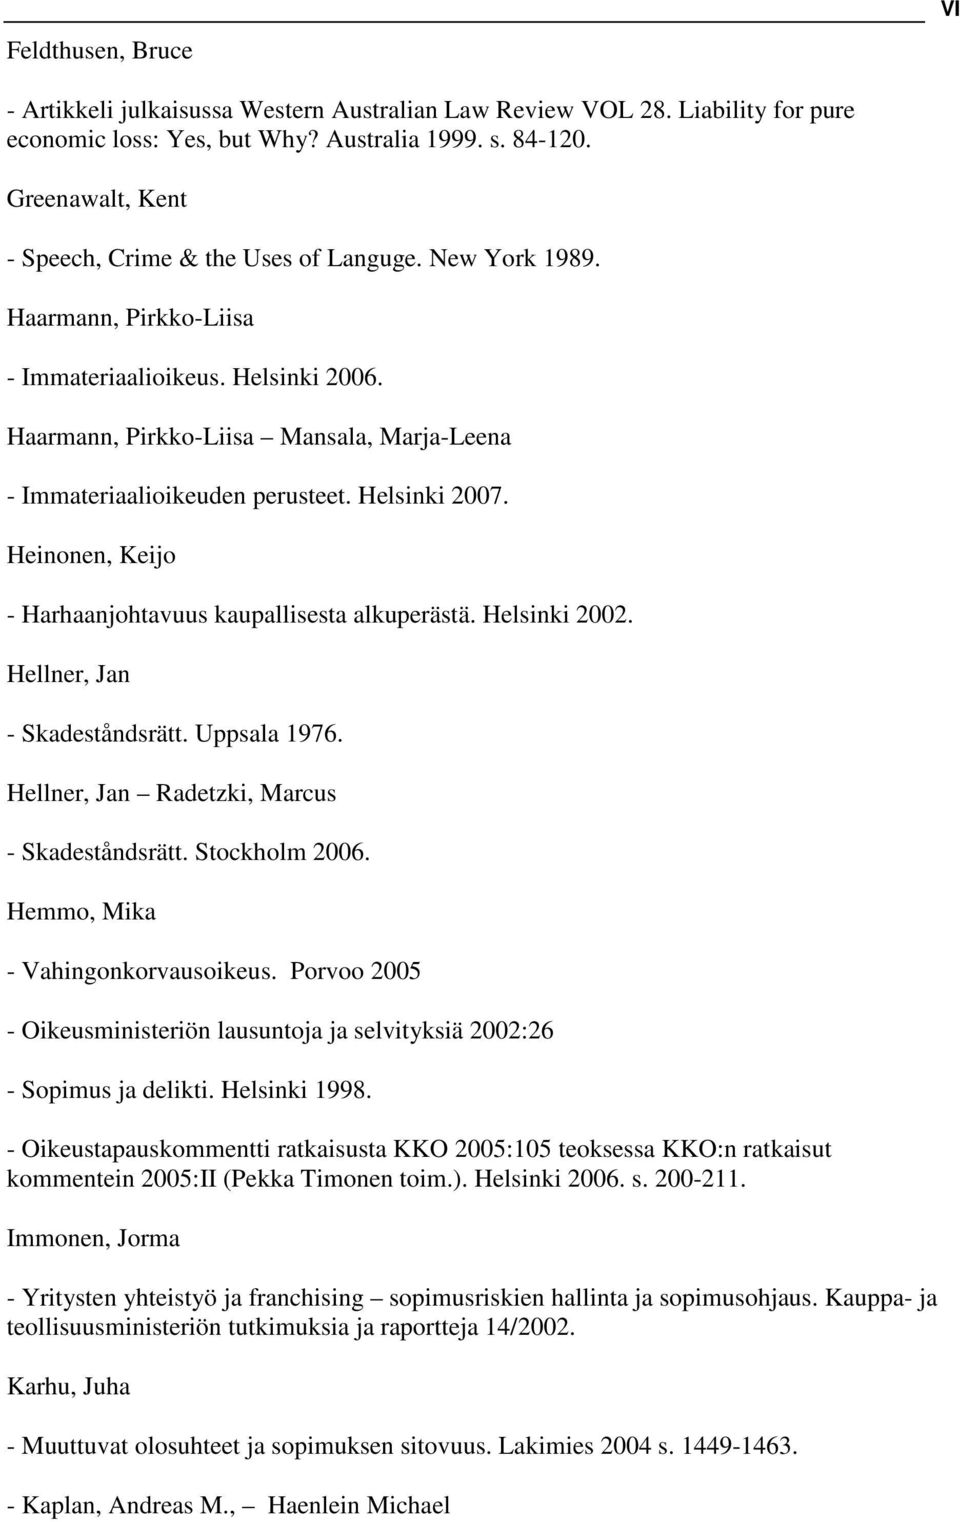 Haarmann, Pirkko-Liisa Mansala, Marja-Leena - Immateriaalioikeuden perusteet. Helsinki 2007. Heinonen, Keijo - Harhaanjohtavuus kaupallisesta alkuperästä. Helsinki 2002.